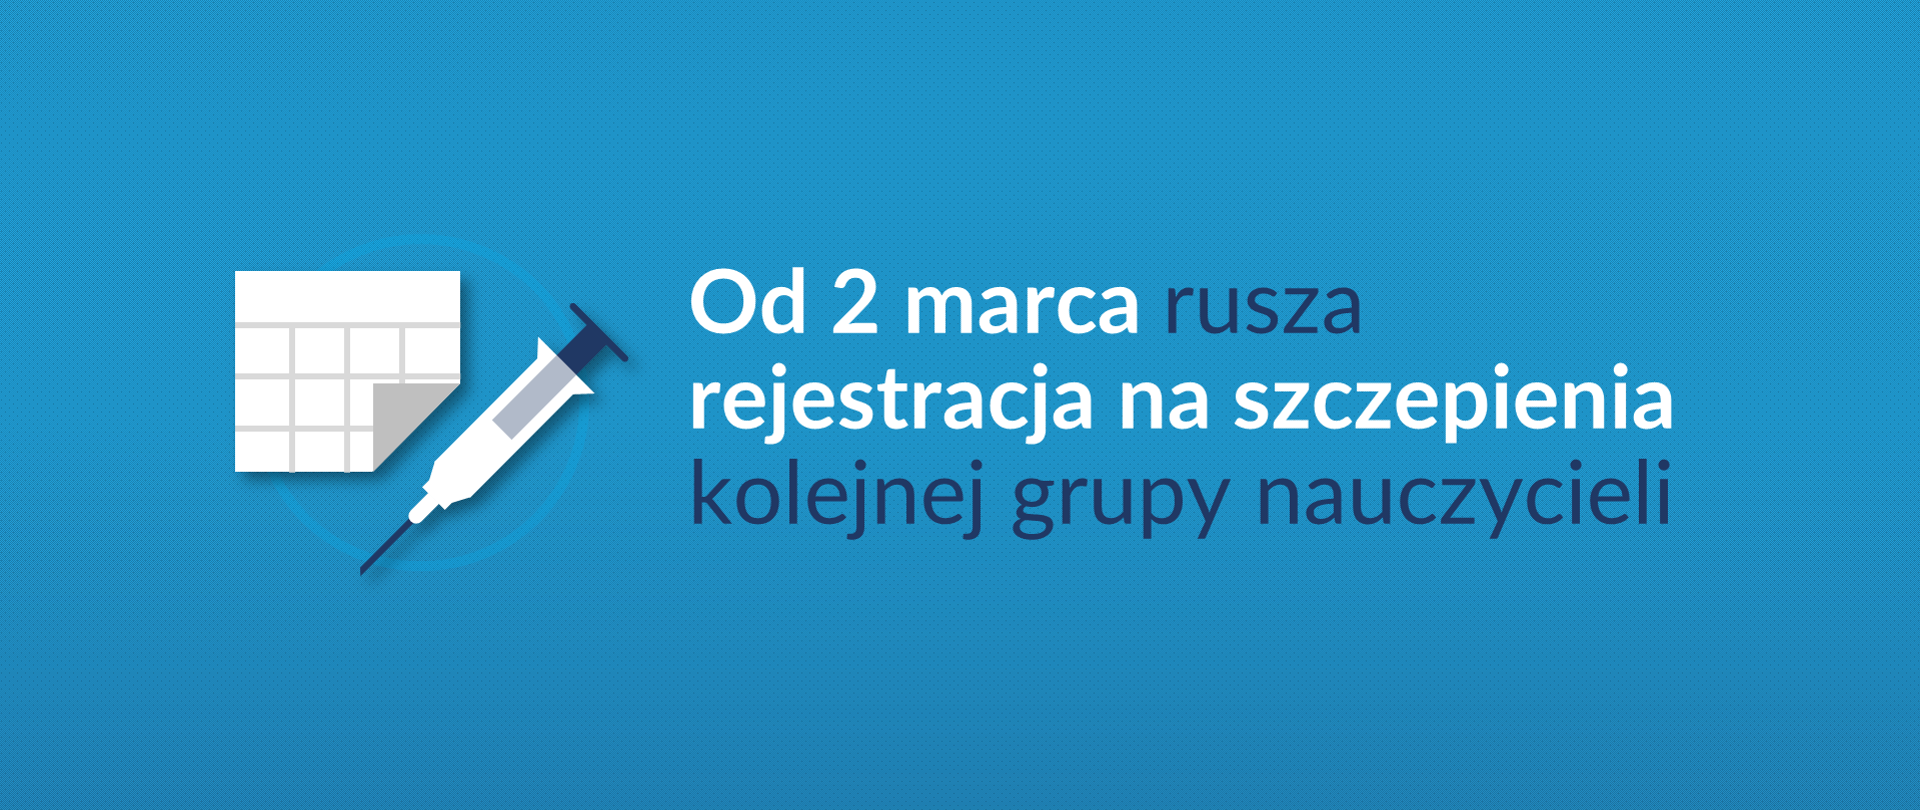 Grafika z tekstem: od 2 marca rusza rejestracja na szczepienia kolejnej grupy nauczycieli 